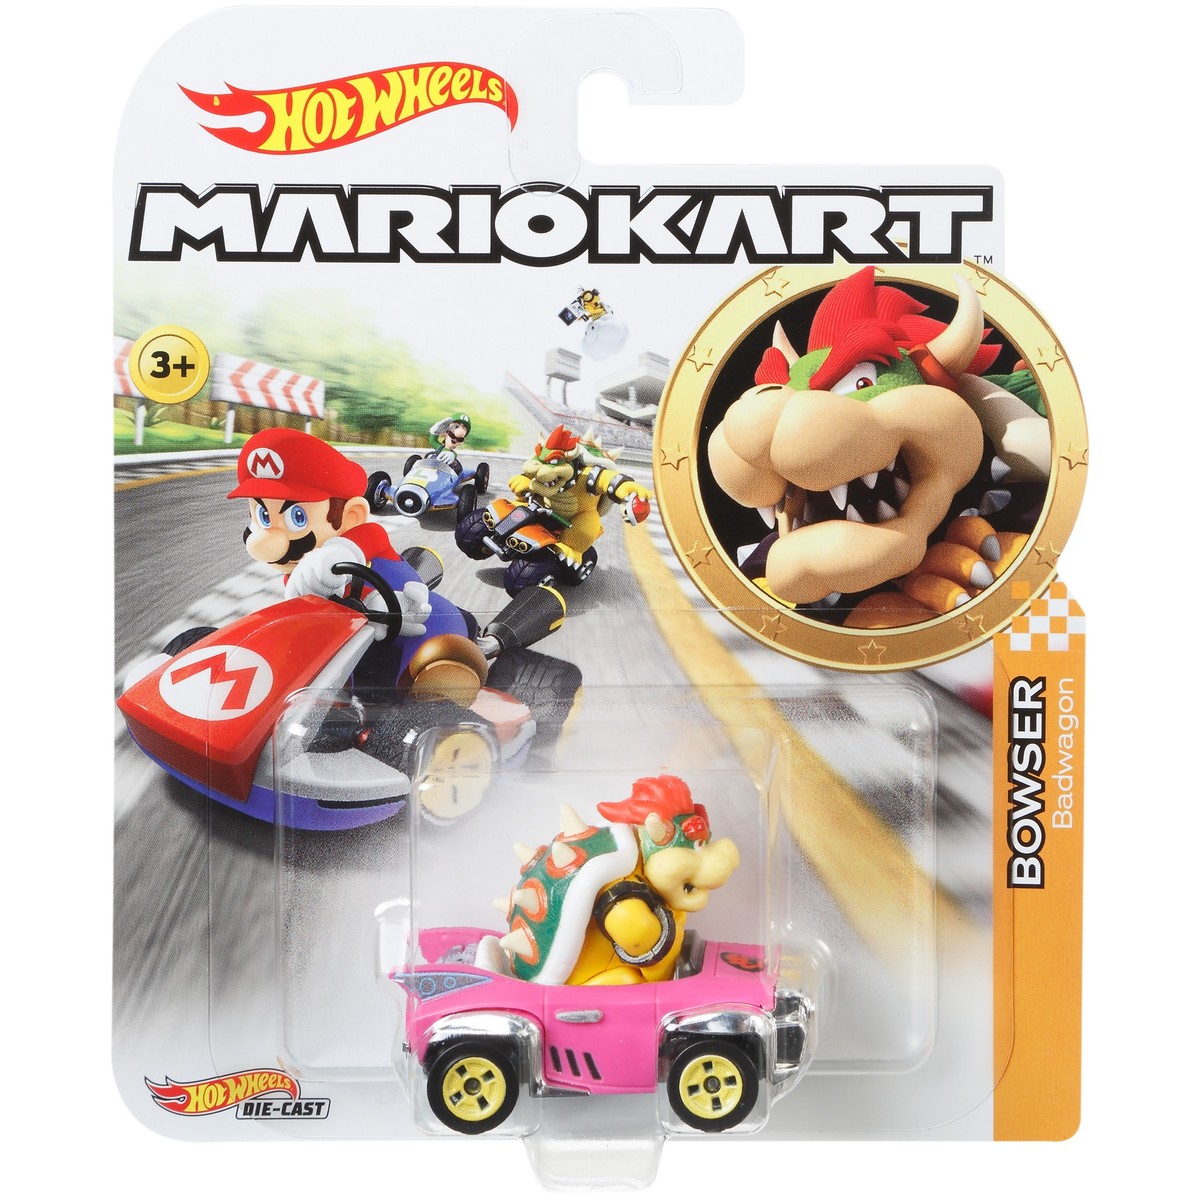 Hot Wheels Mario Kart Assortment Mix B Car Assorted Carton Mattel My Xxx Hot Girl 8550